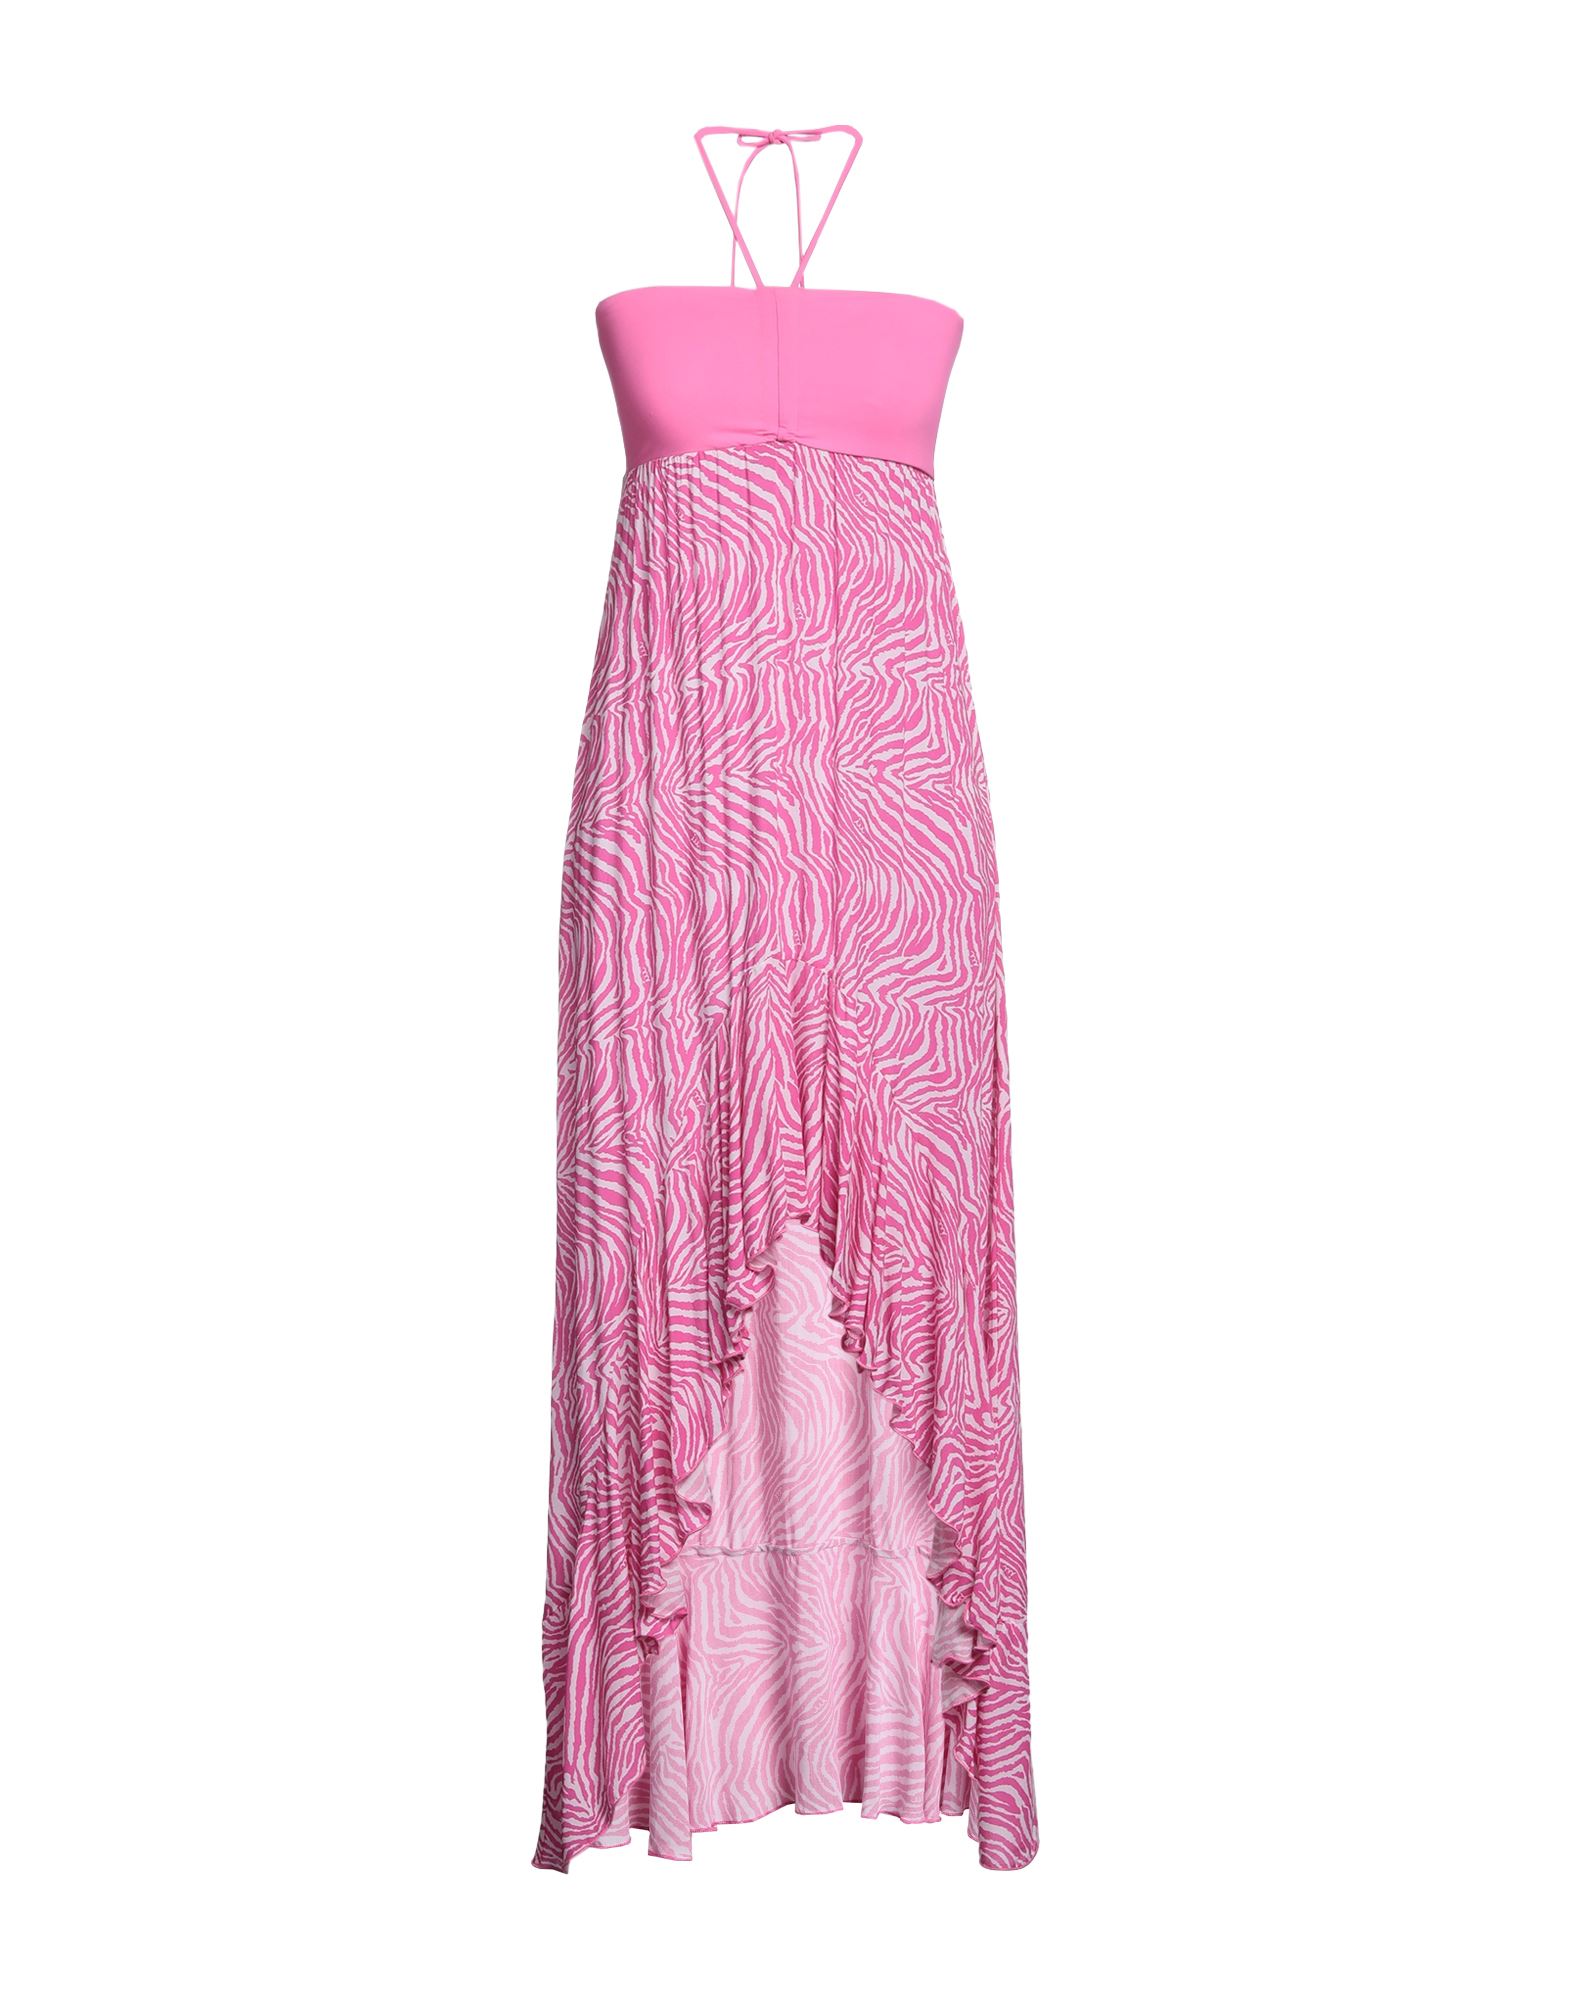 Iu Rita Mennoia Short Dresses In Pink